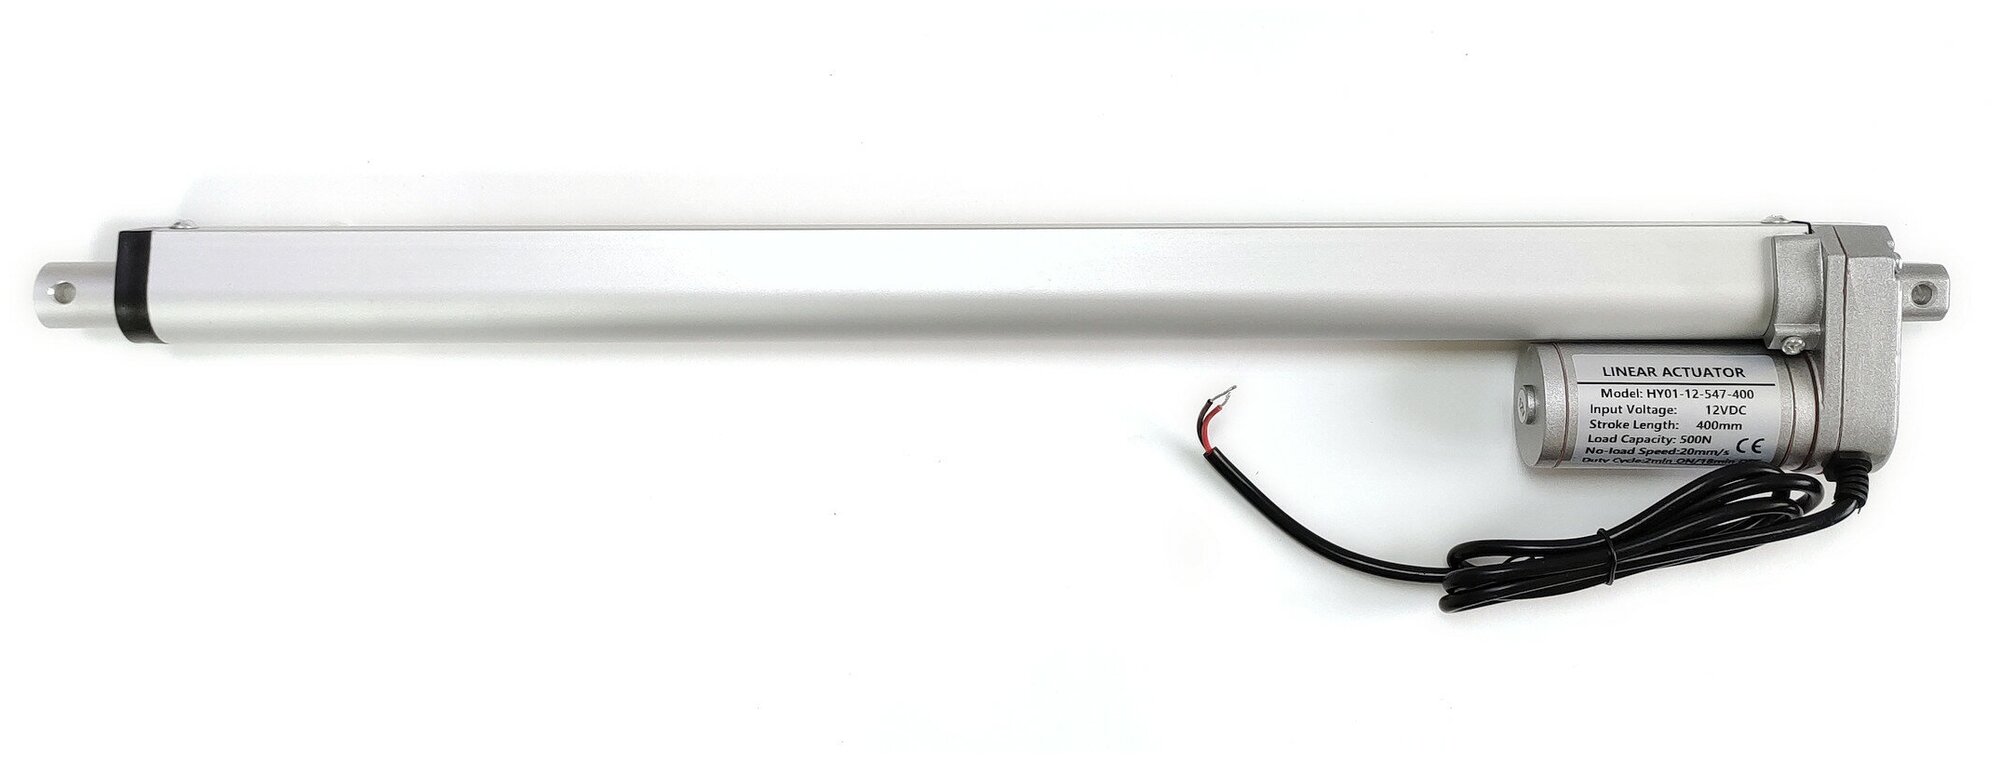 Линейный привод (актуатор) 12 В, длина хода 400 мм, 20 мм/с, нагрузка до 50 кг.